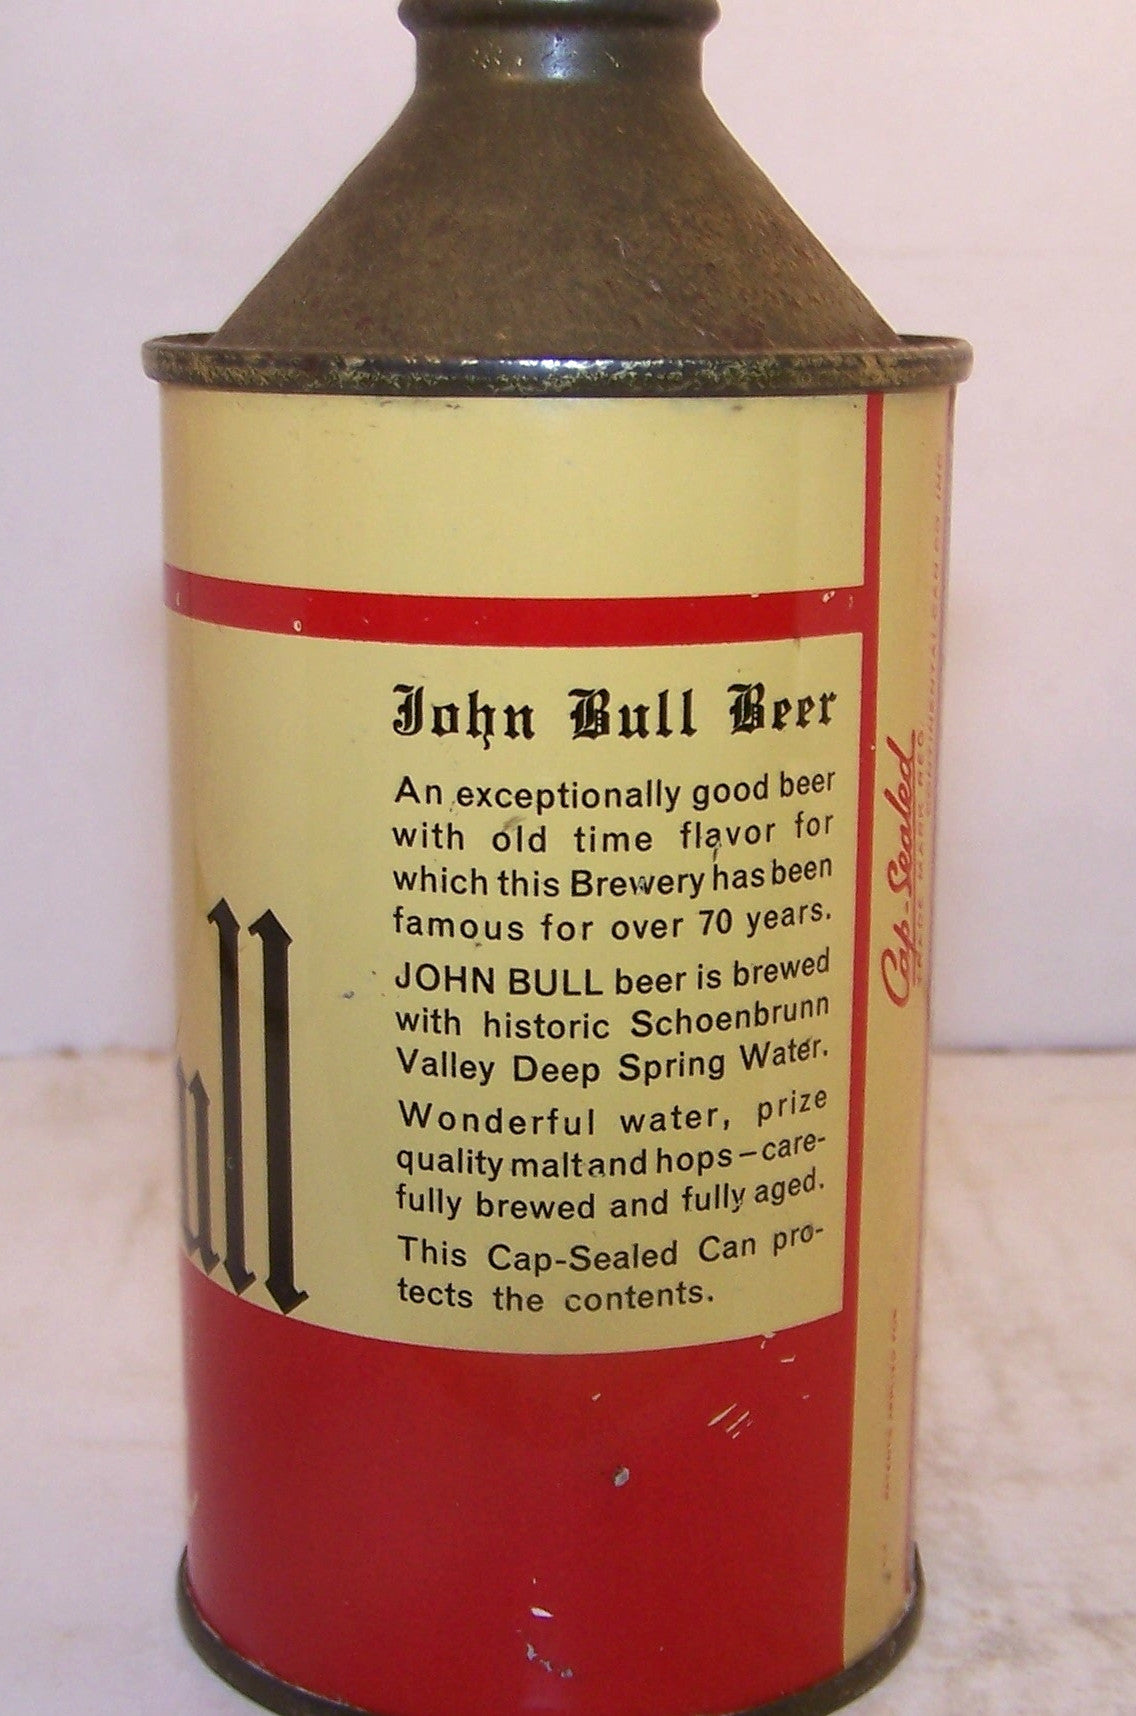 John Bull Beer, USBC 170-17, Grade 1 Sold 12/9/14. Trending Down